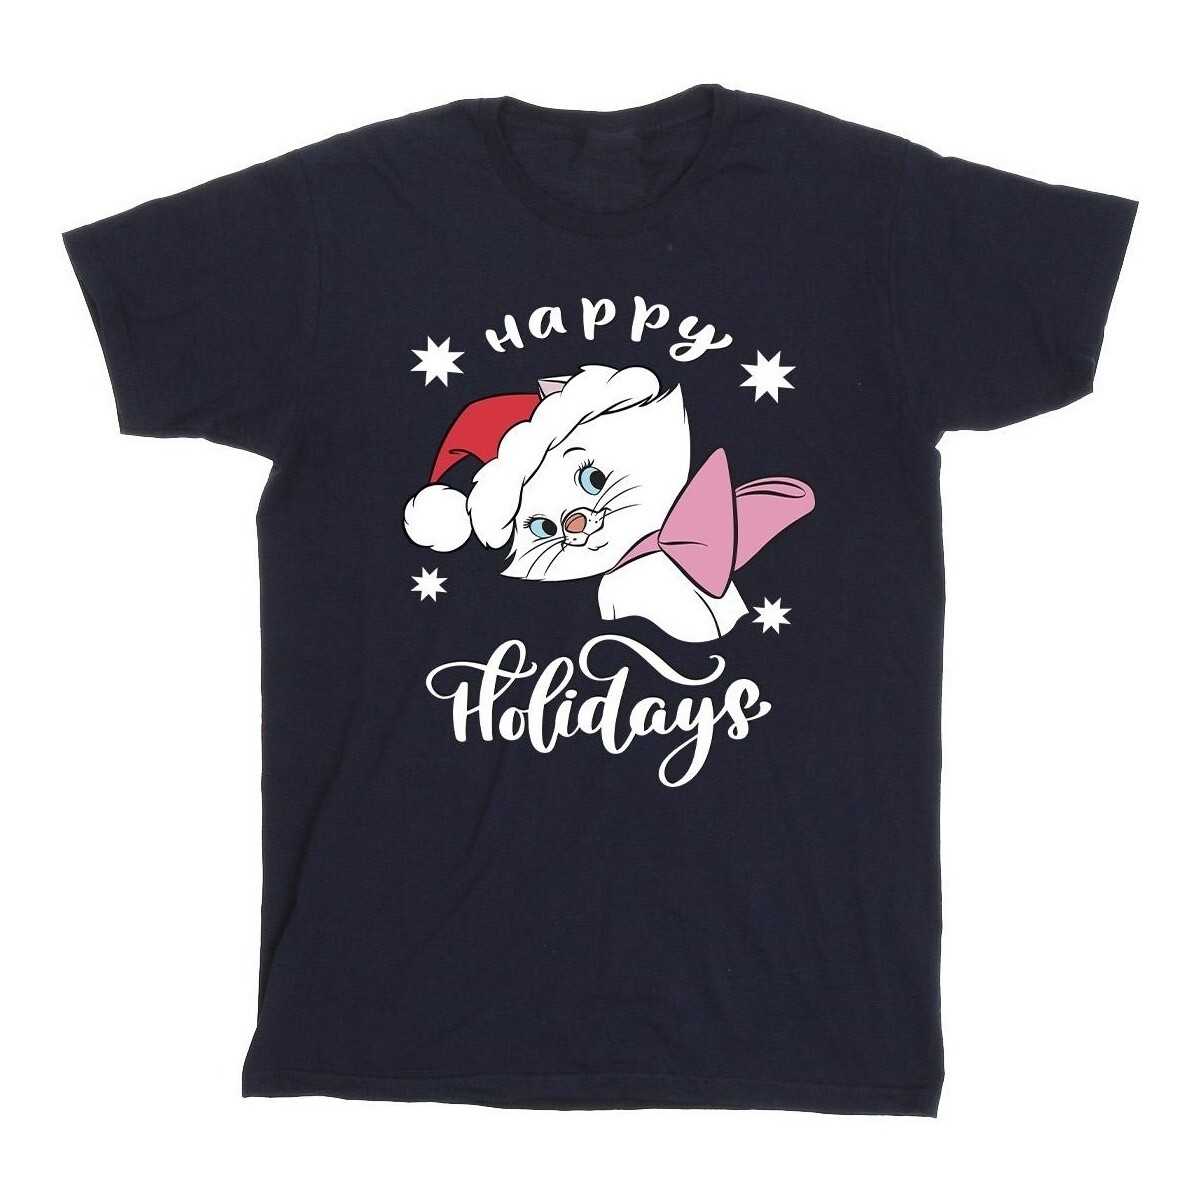 textil Niña Camisetas manga larga Disney The Aristocats Happy Holidays Azul